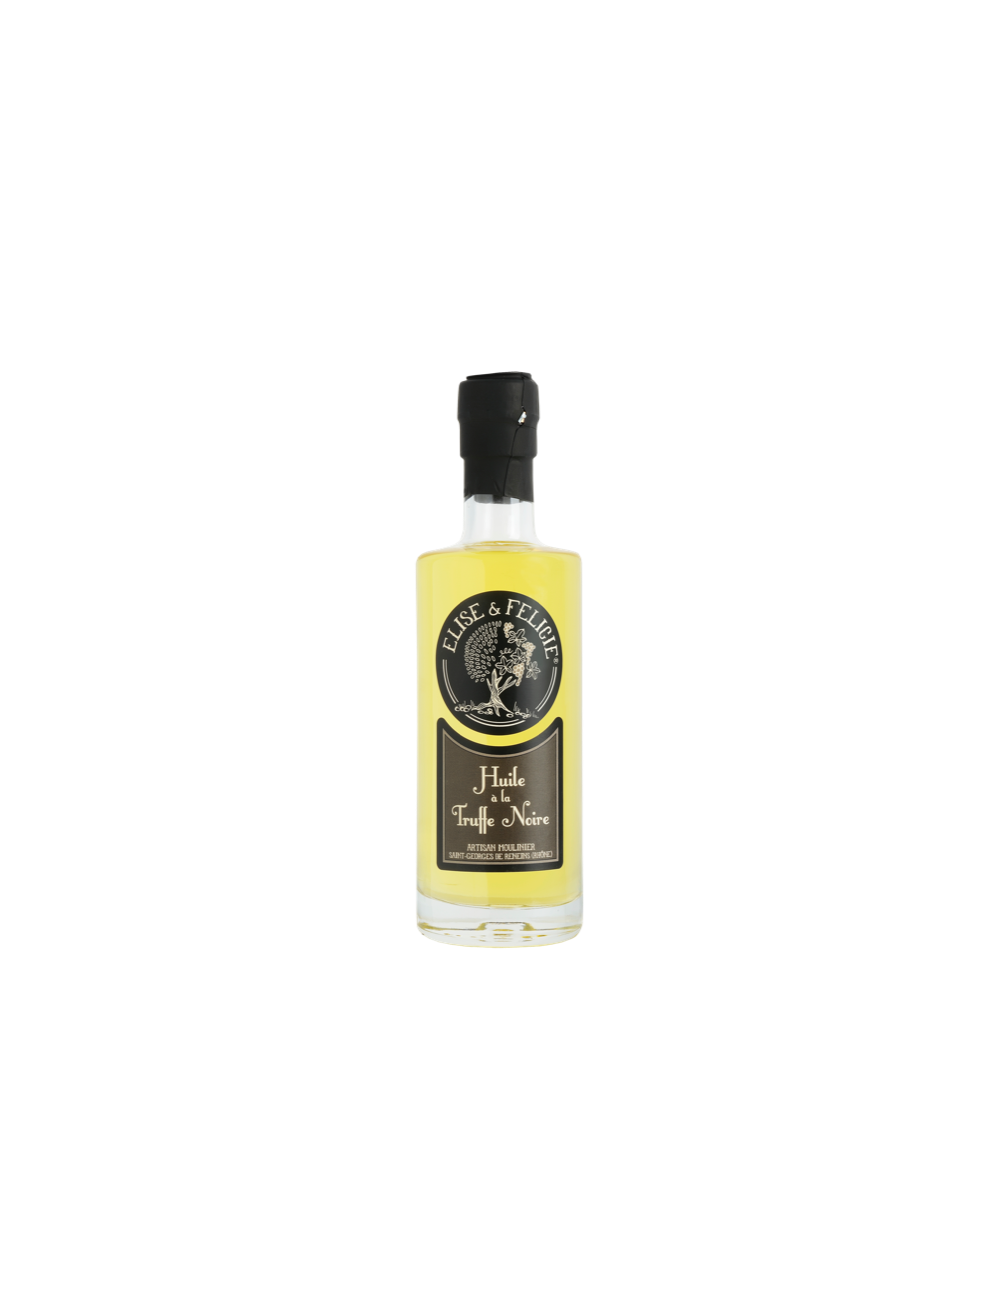 Huile d'olive arôme truffe noire 25cl